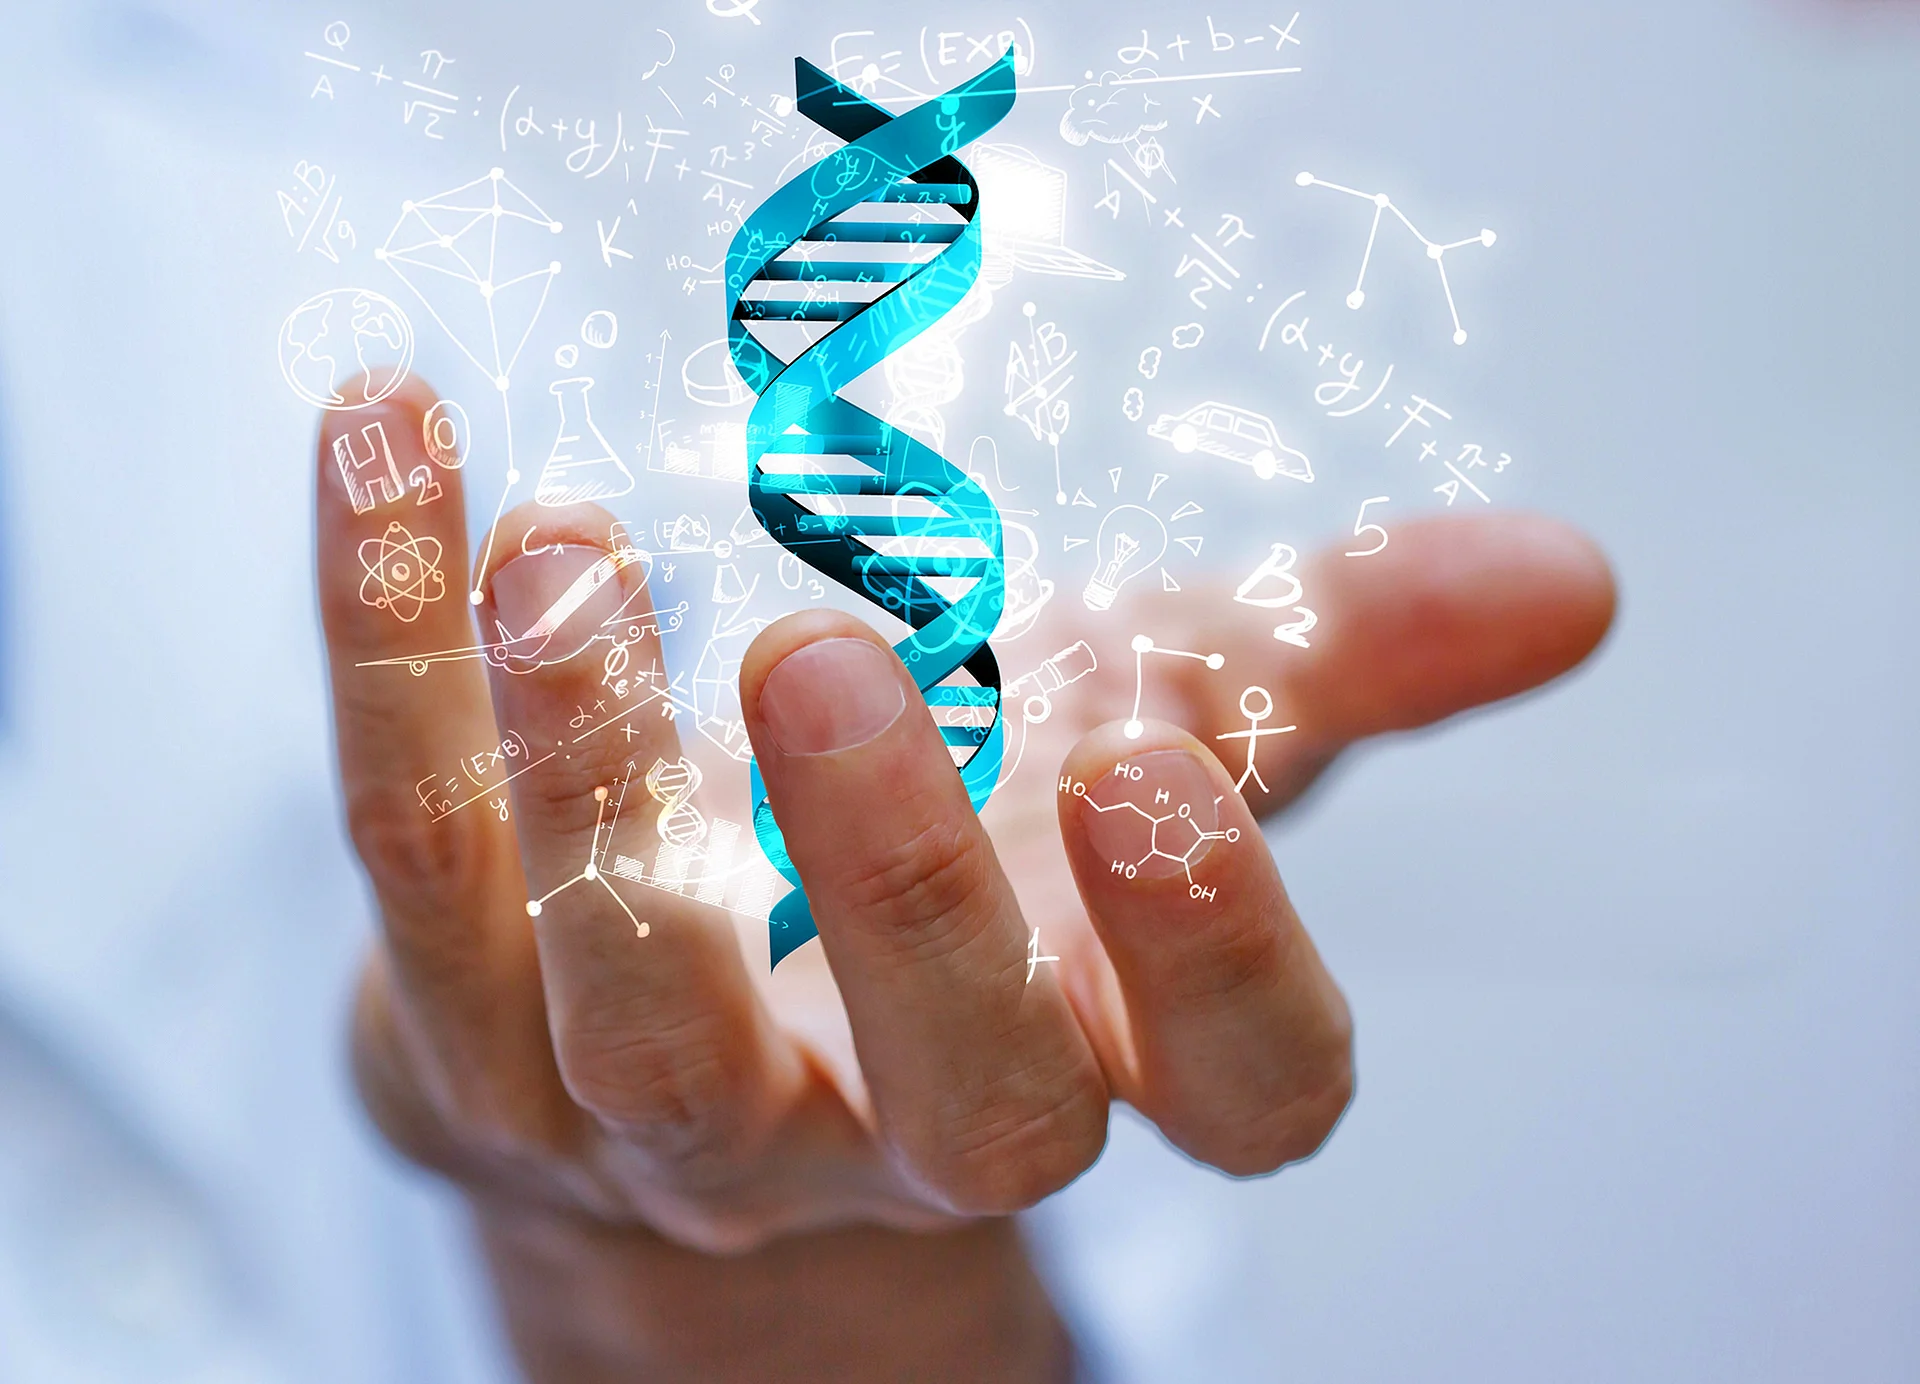 ДНК В руке